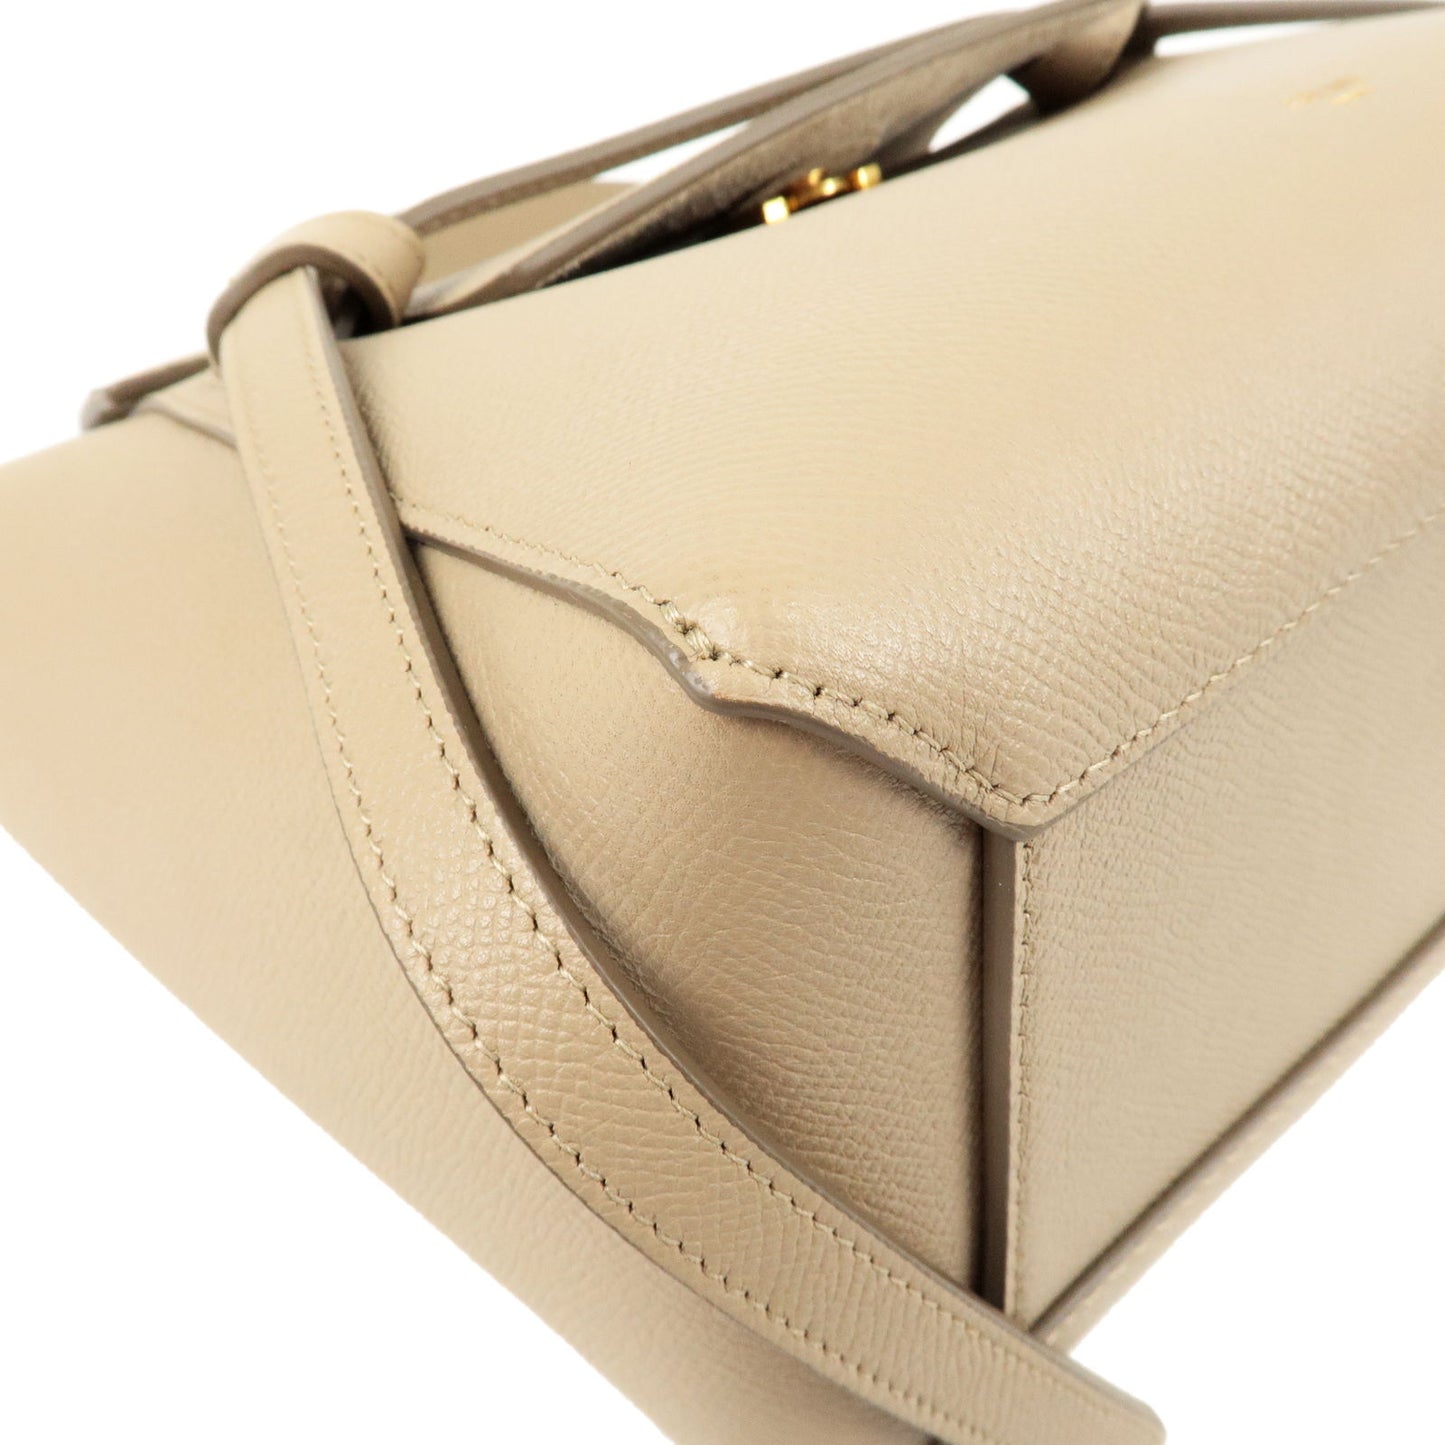 CELINE Leather Micro Belt Bag 2Way Shoulder Bag Light Taupe 189153